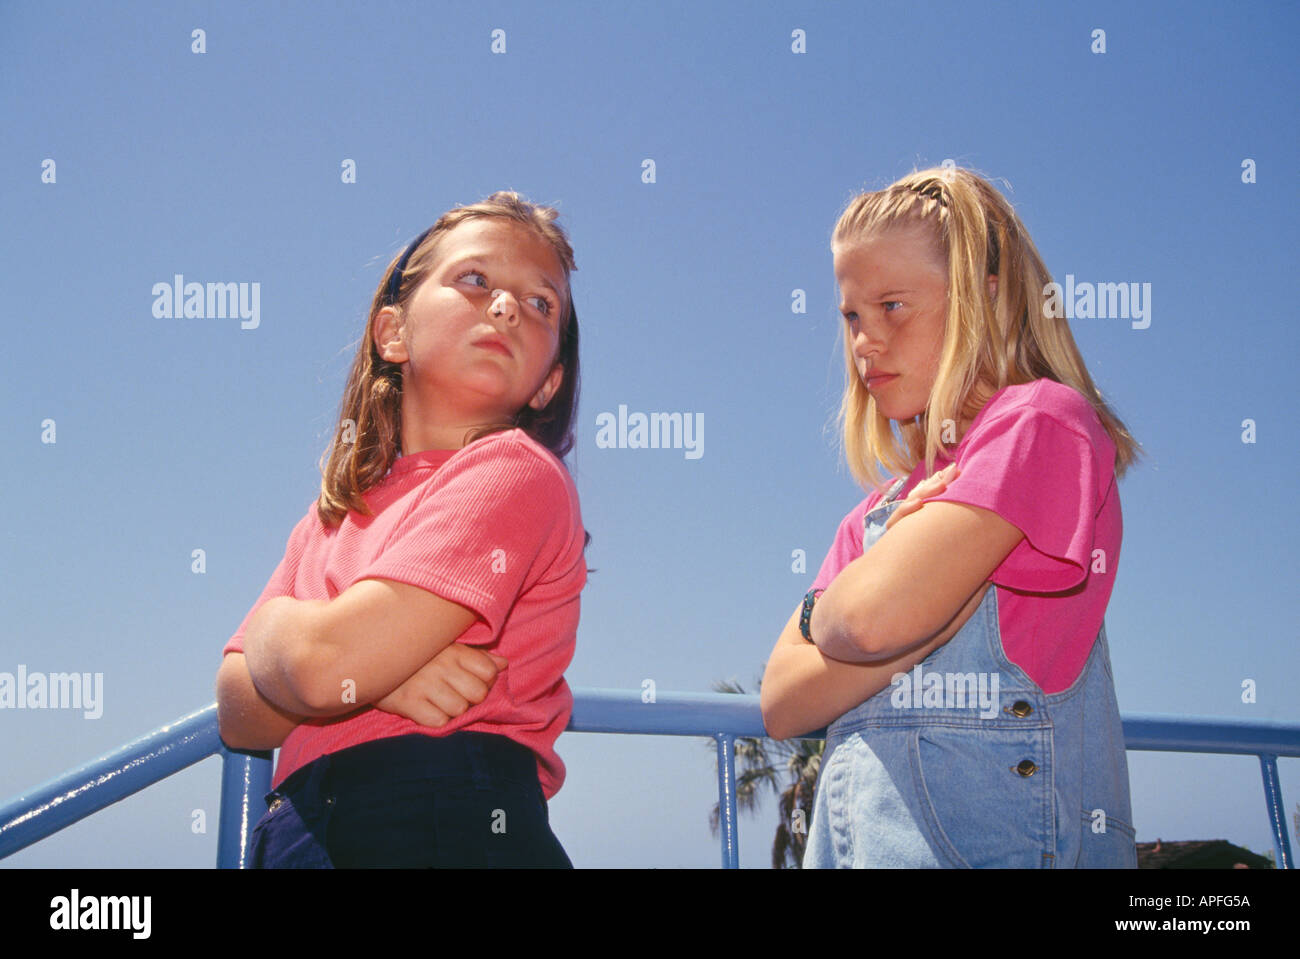 Zwei junge Mädchen im Alter von 8-10 Jahren mit jedem anderen verärgert schaut über die Schulter mit meinen Ausdruck niedrigen Winkel von unten HERR © Myrleen Pearson Stockfoto